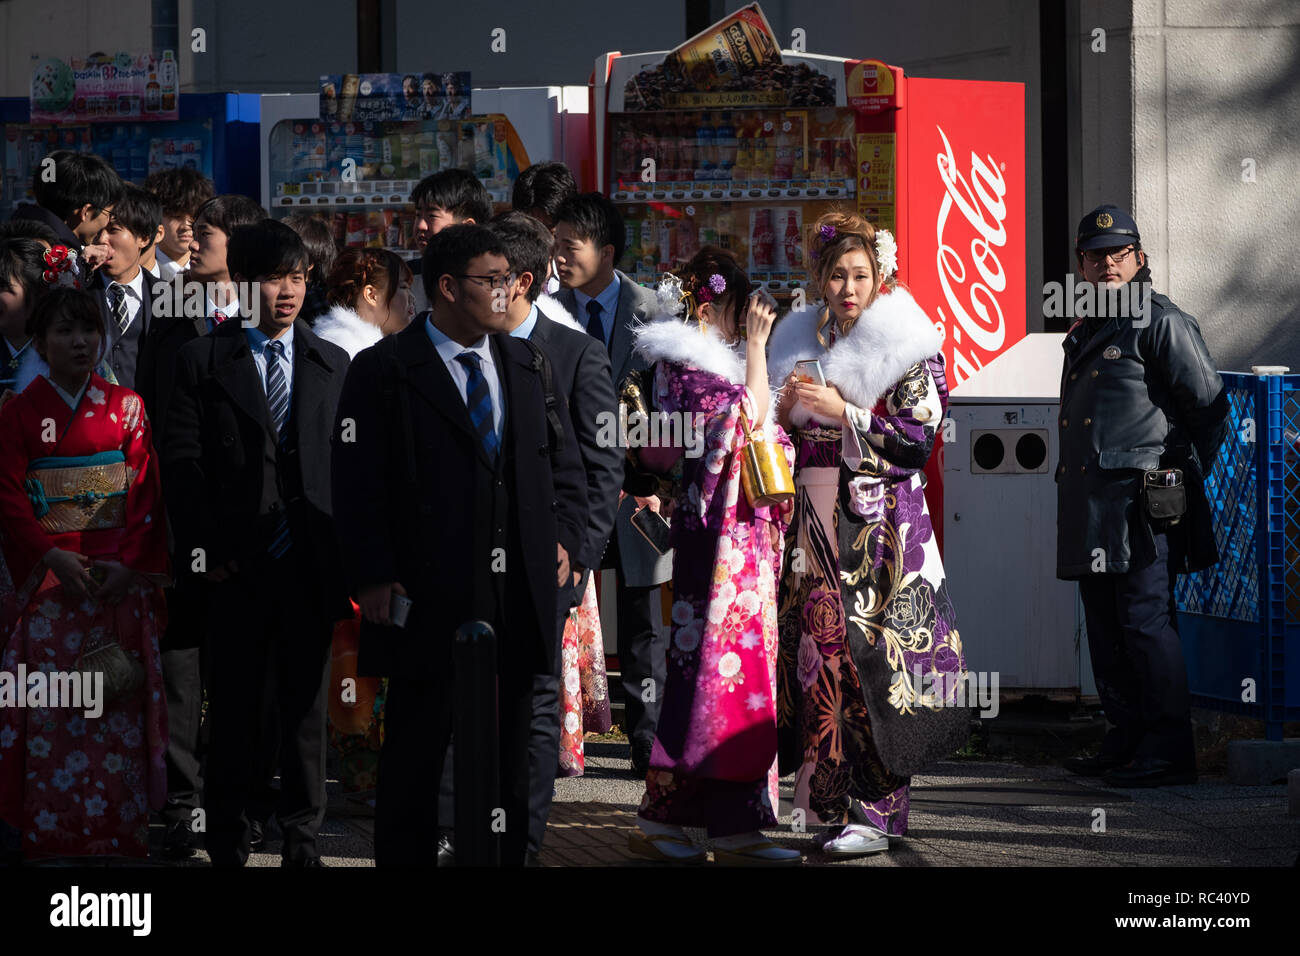 Les femmes portant un kimono attendre pour traverser une rue comme ils quitte après avoir assisté à une cérémonie de passage à l'âge adulte le 14 janvier 2019 à Yokohama, au Japon. Venue de l'âge de jour est un lieu de vacances japonais au mois de janvier de chaque année pour célébrer les personnes qui ont atteint 20 - l'âge officiel de l'âge adulte au Japon. La ville de Yokohama, avec près de 35 000 personnes en tournant 20 cette année, est maintenant un des plus grands événements dans le pays. 14 janvier 2019 Crédit : Nicolas Datiche/AFLO/Alamy Live News Banque D'Images